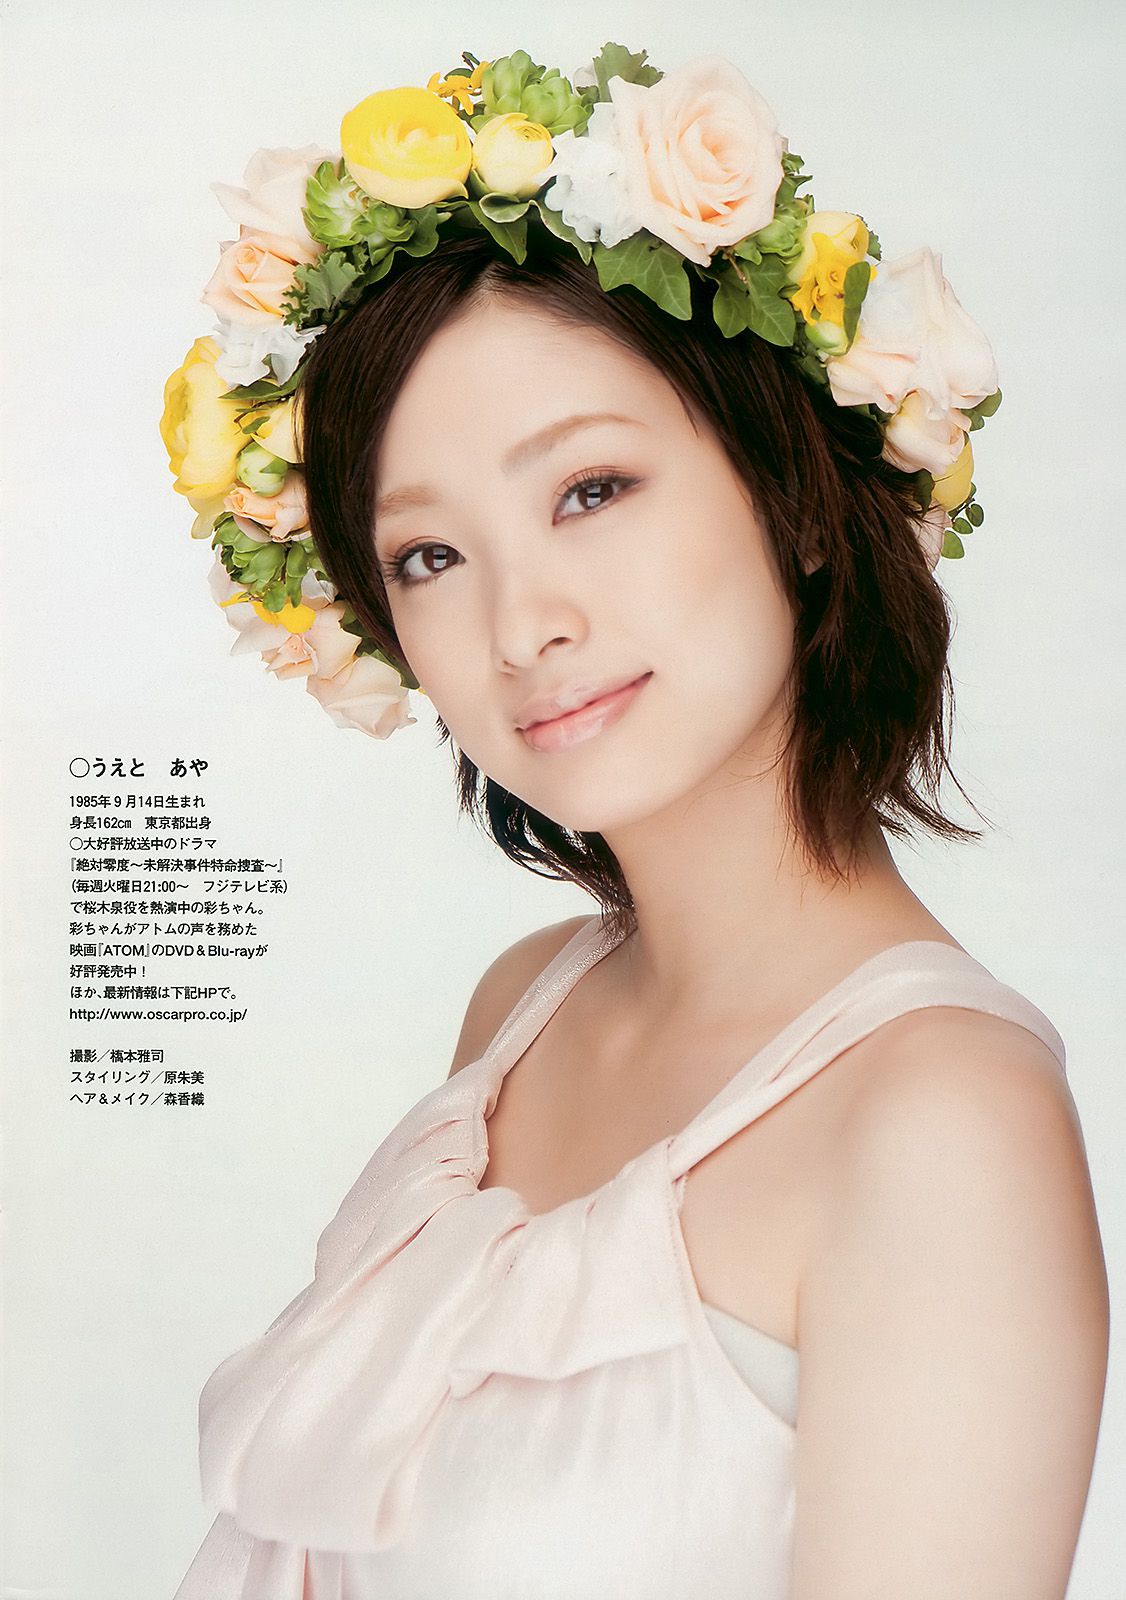 Aya Uedo, Aizawa, Kafei, AKB48 Shiraishi Miho, Goto Risa [Wöchentlicher Playboy] 2010 Nr. 19-20 Fotomagazin Seite 34 No.e4c042